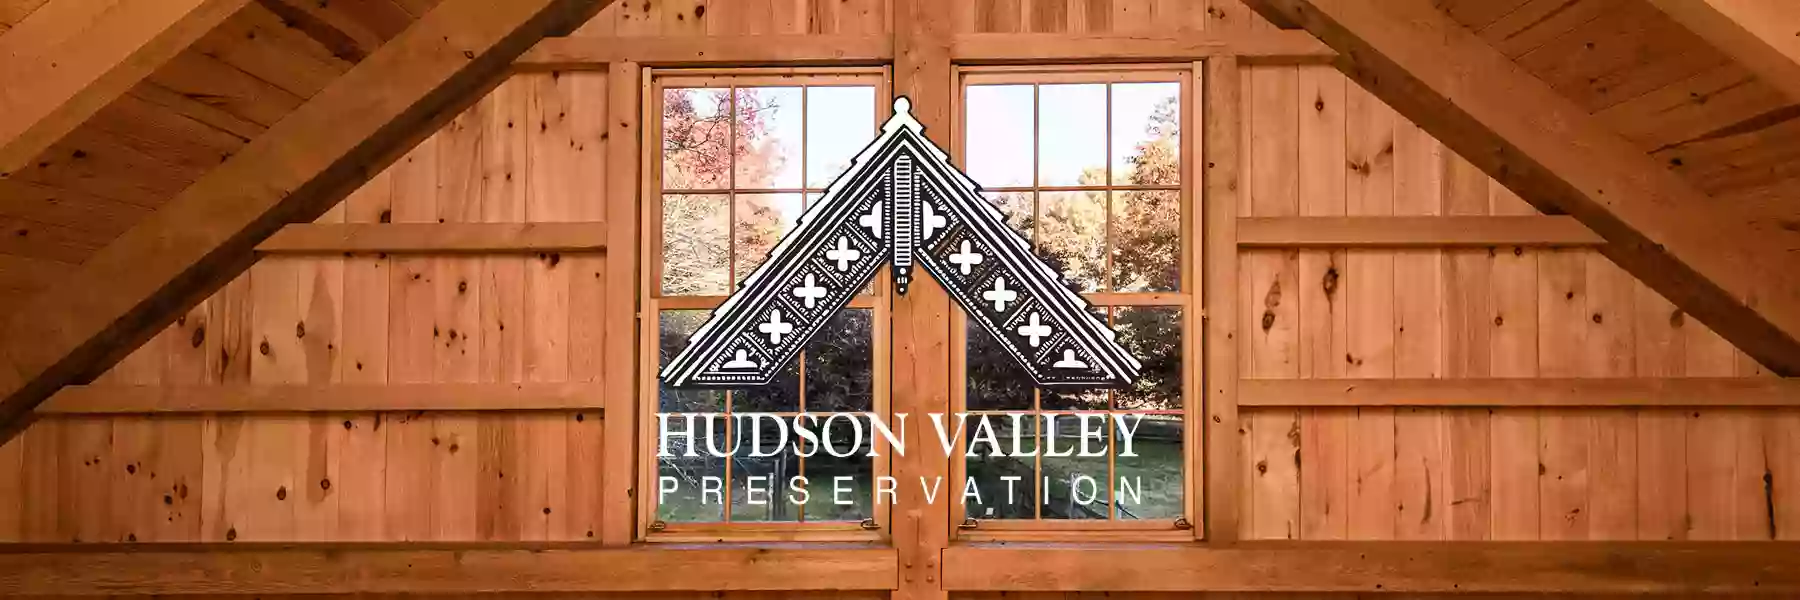 Hudson Valley Preservation, Inc.